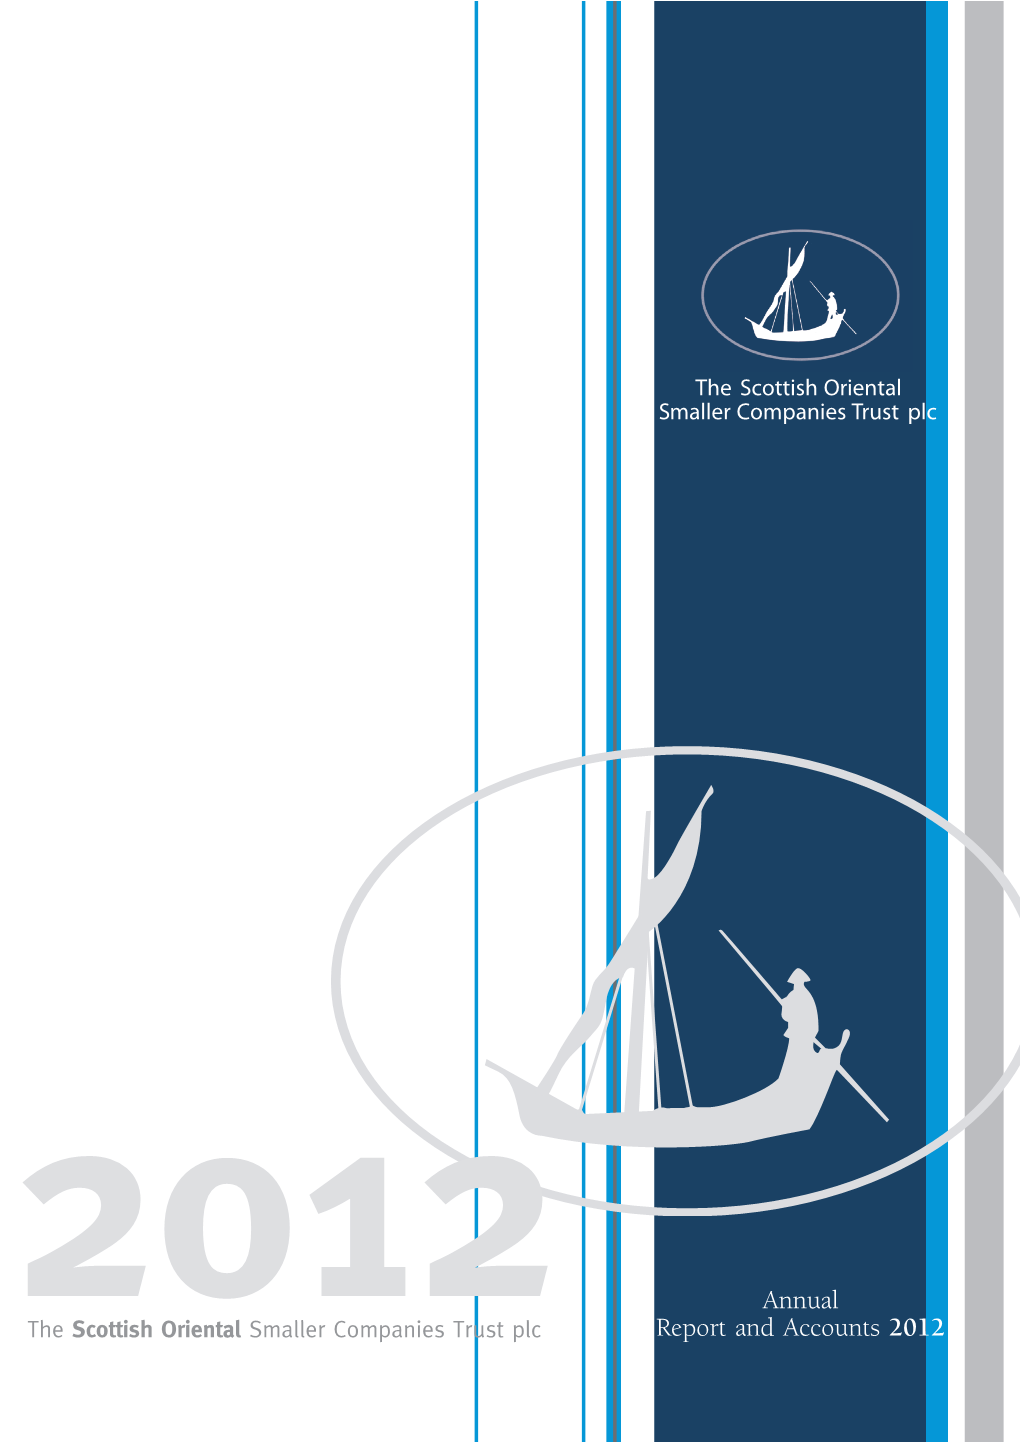 SOSCOT Annual Report 2012